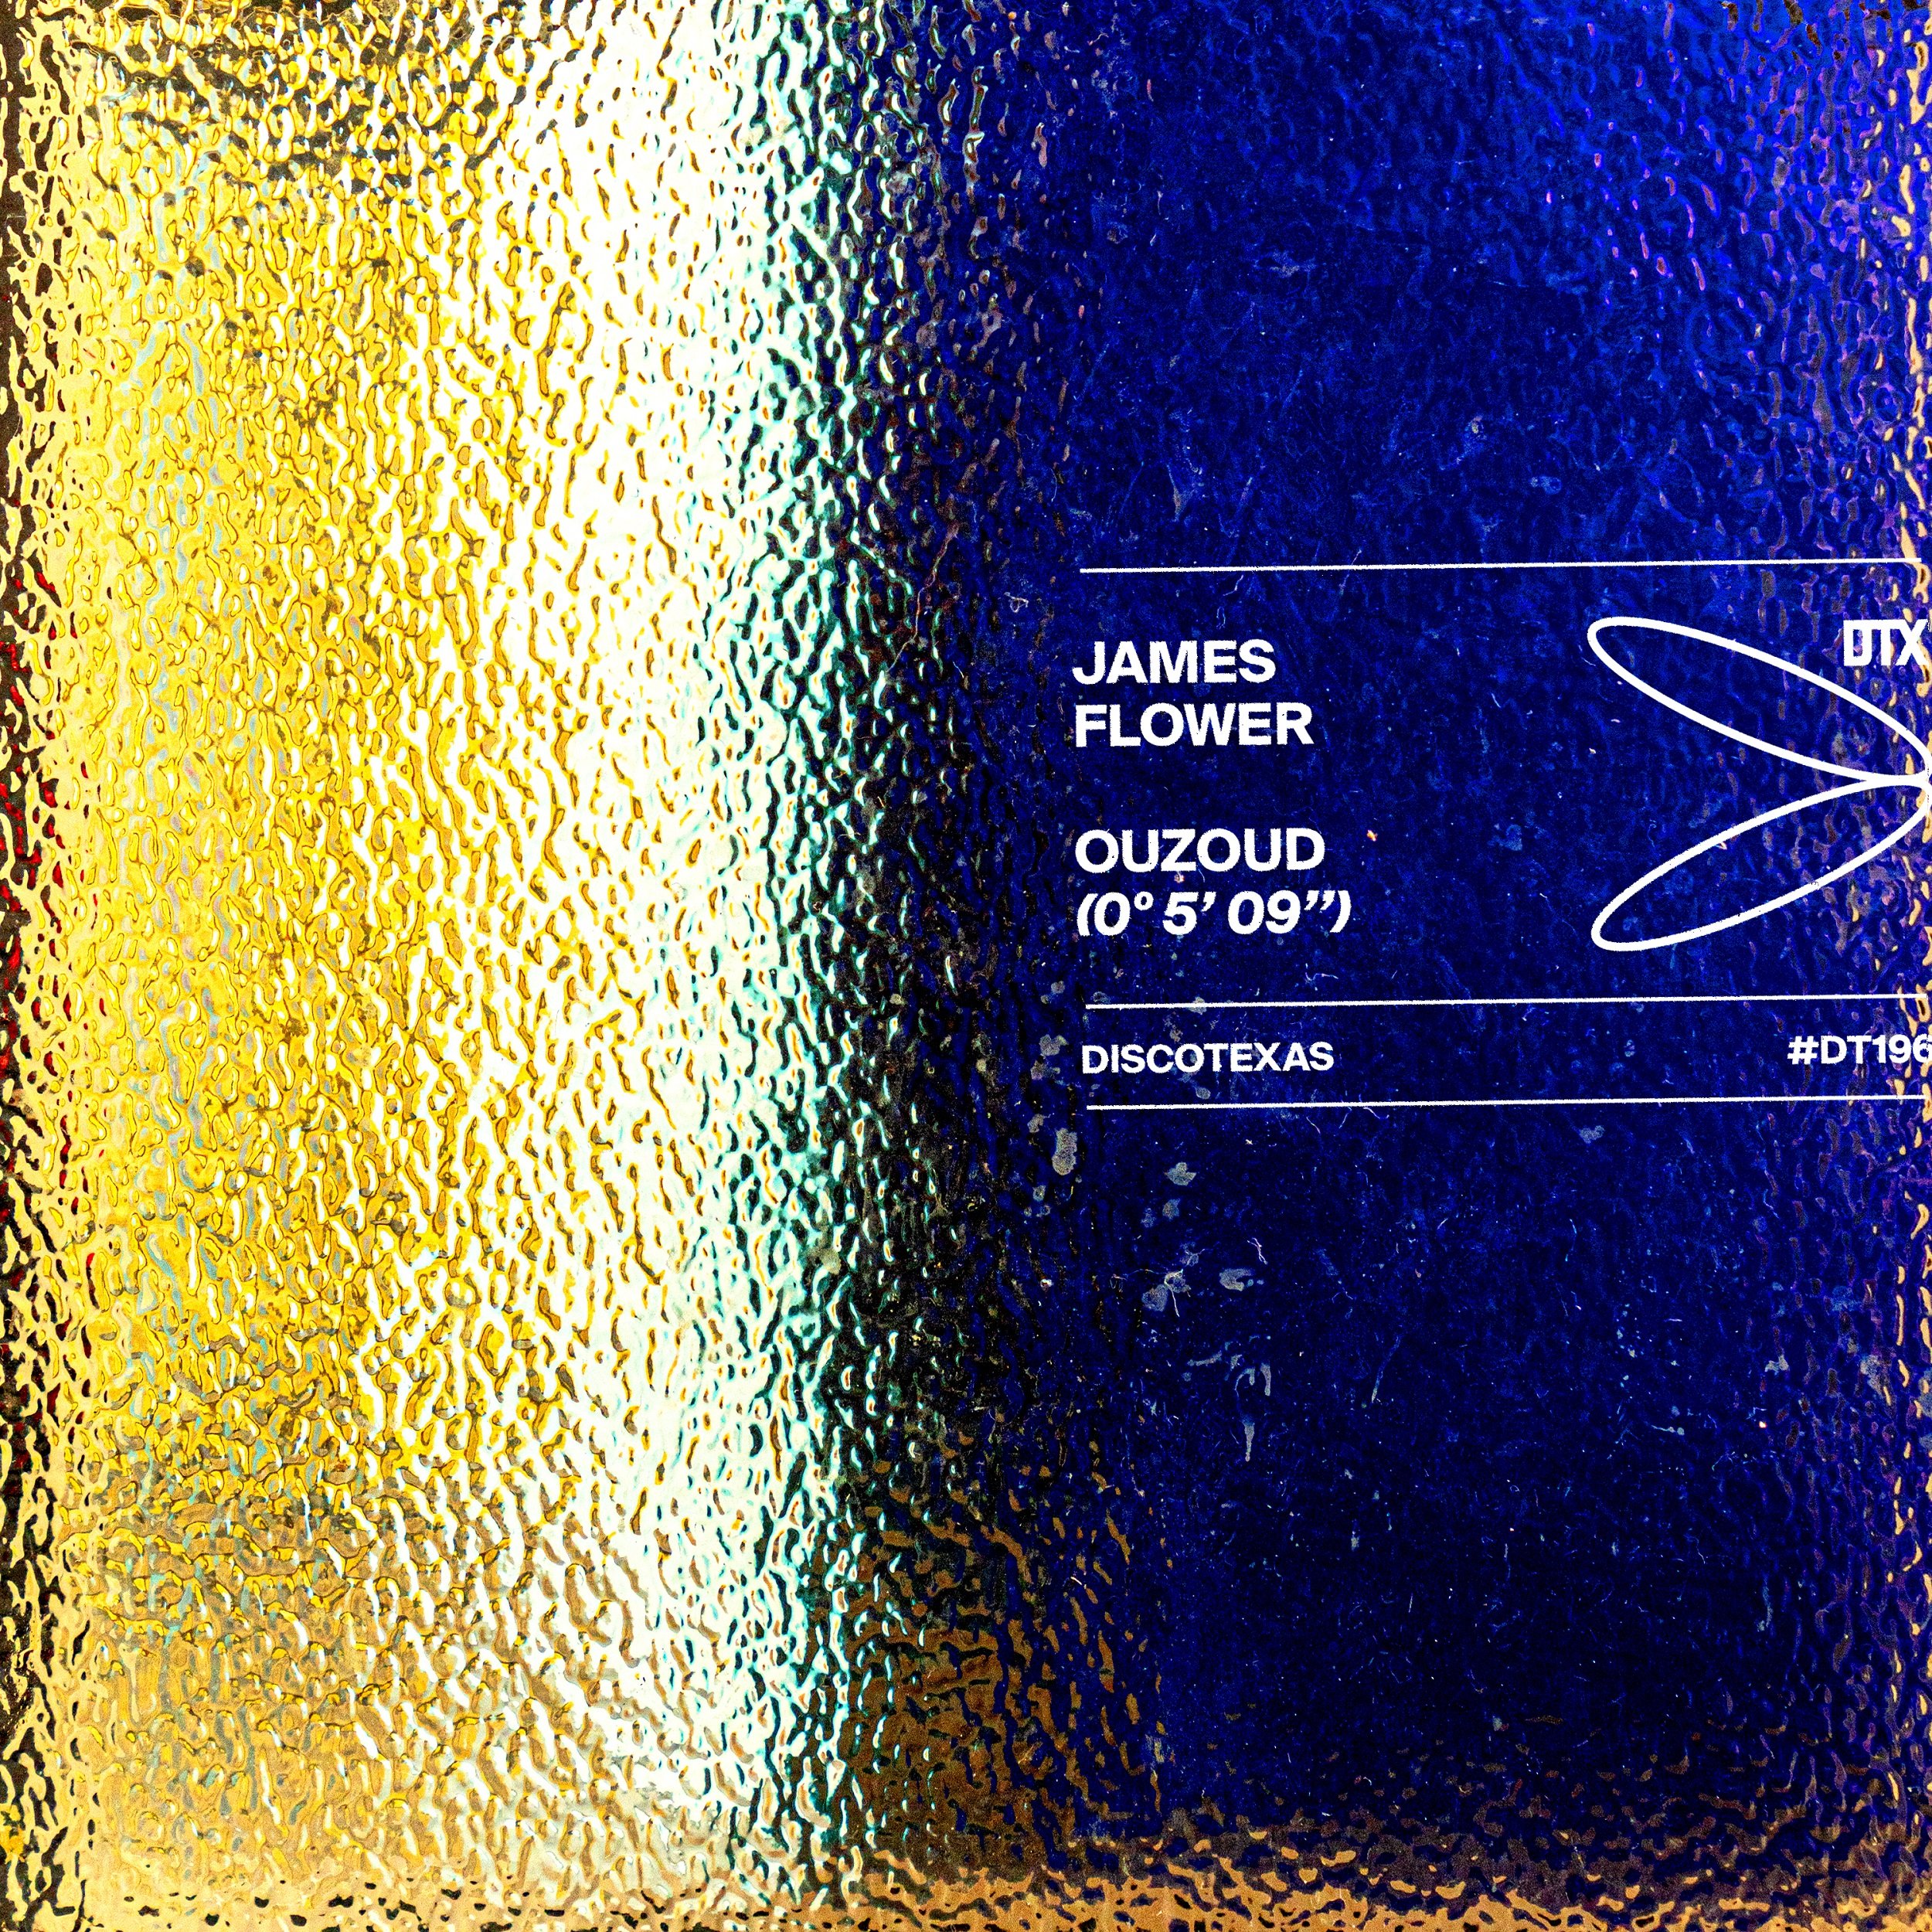 DT196: James Flower - Ouzoud 